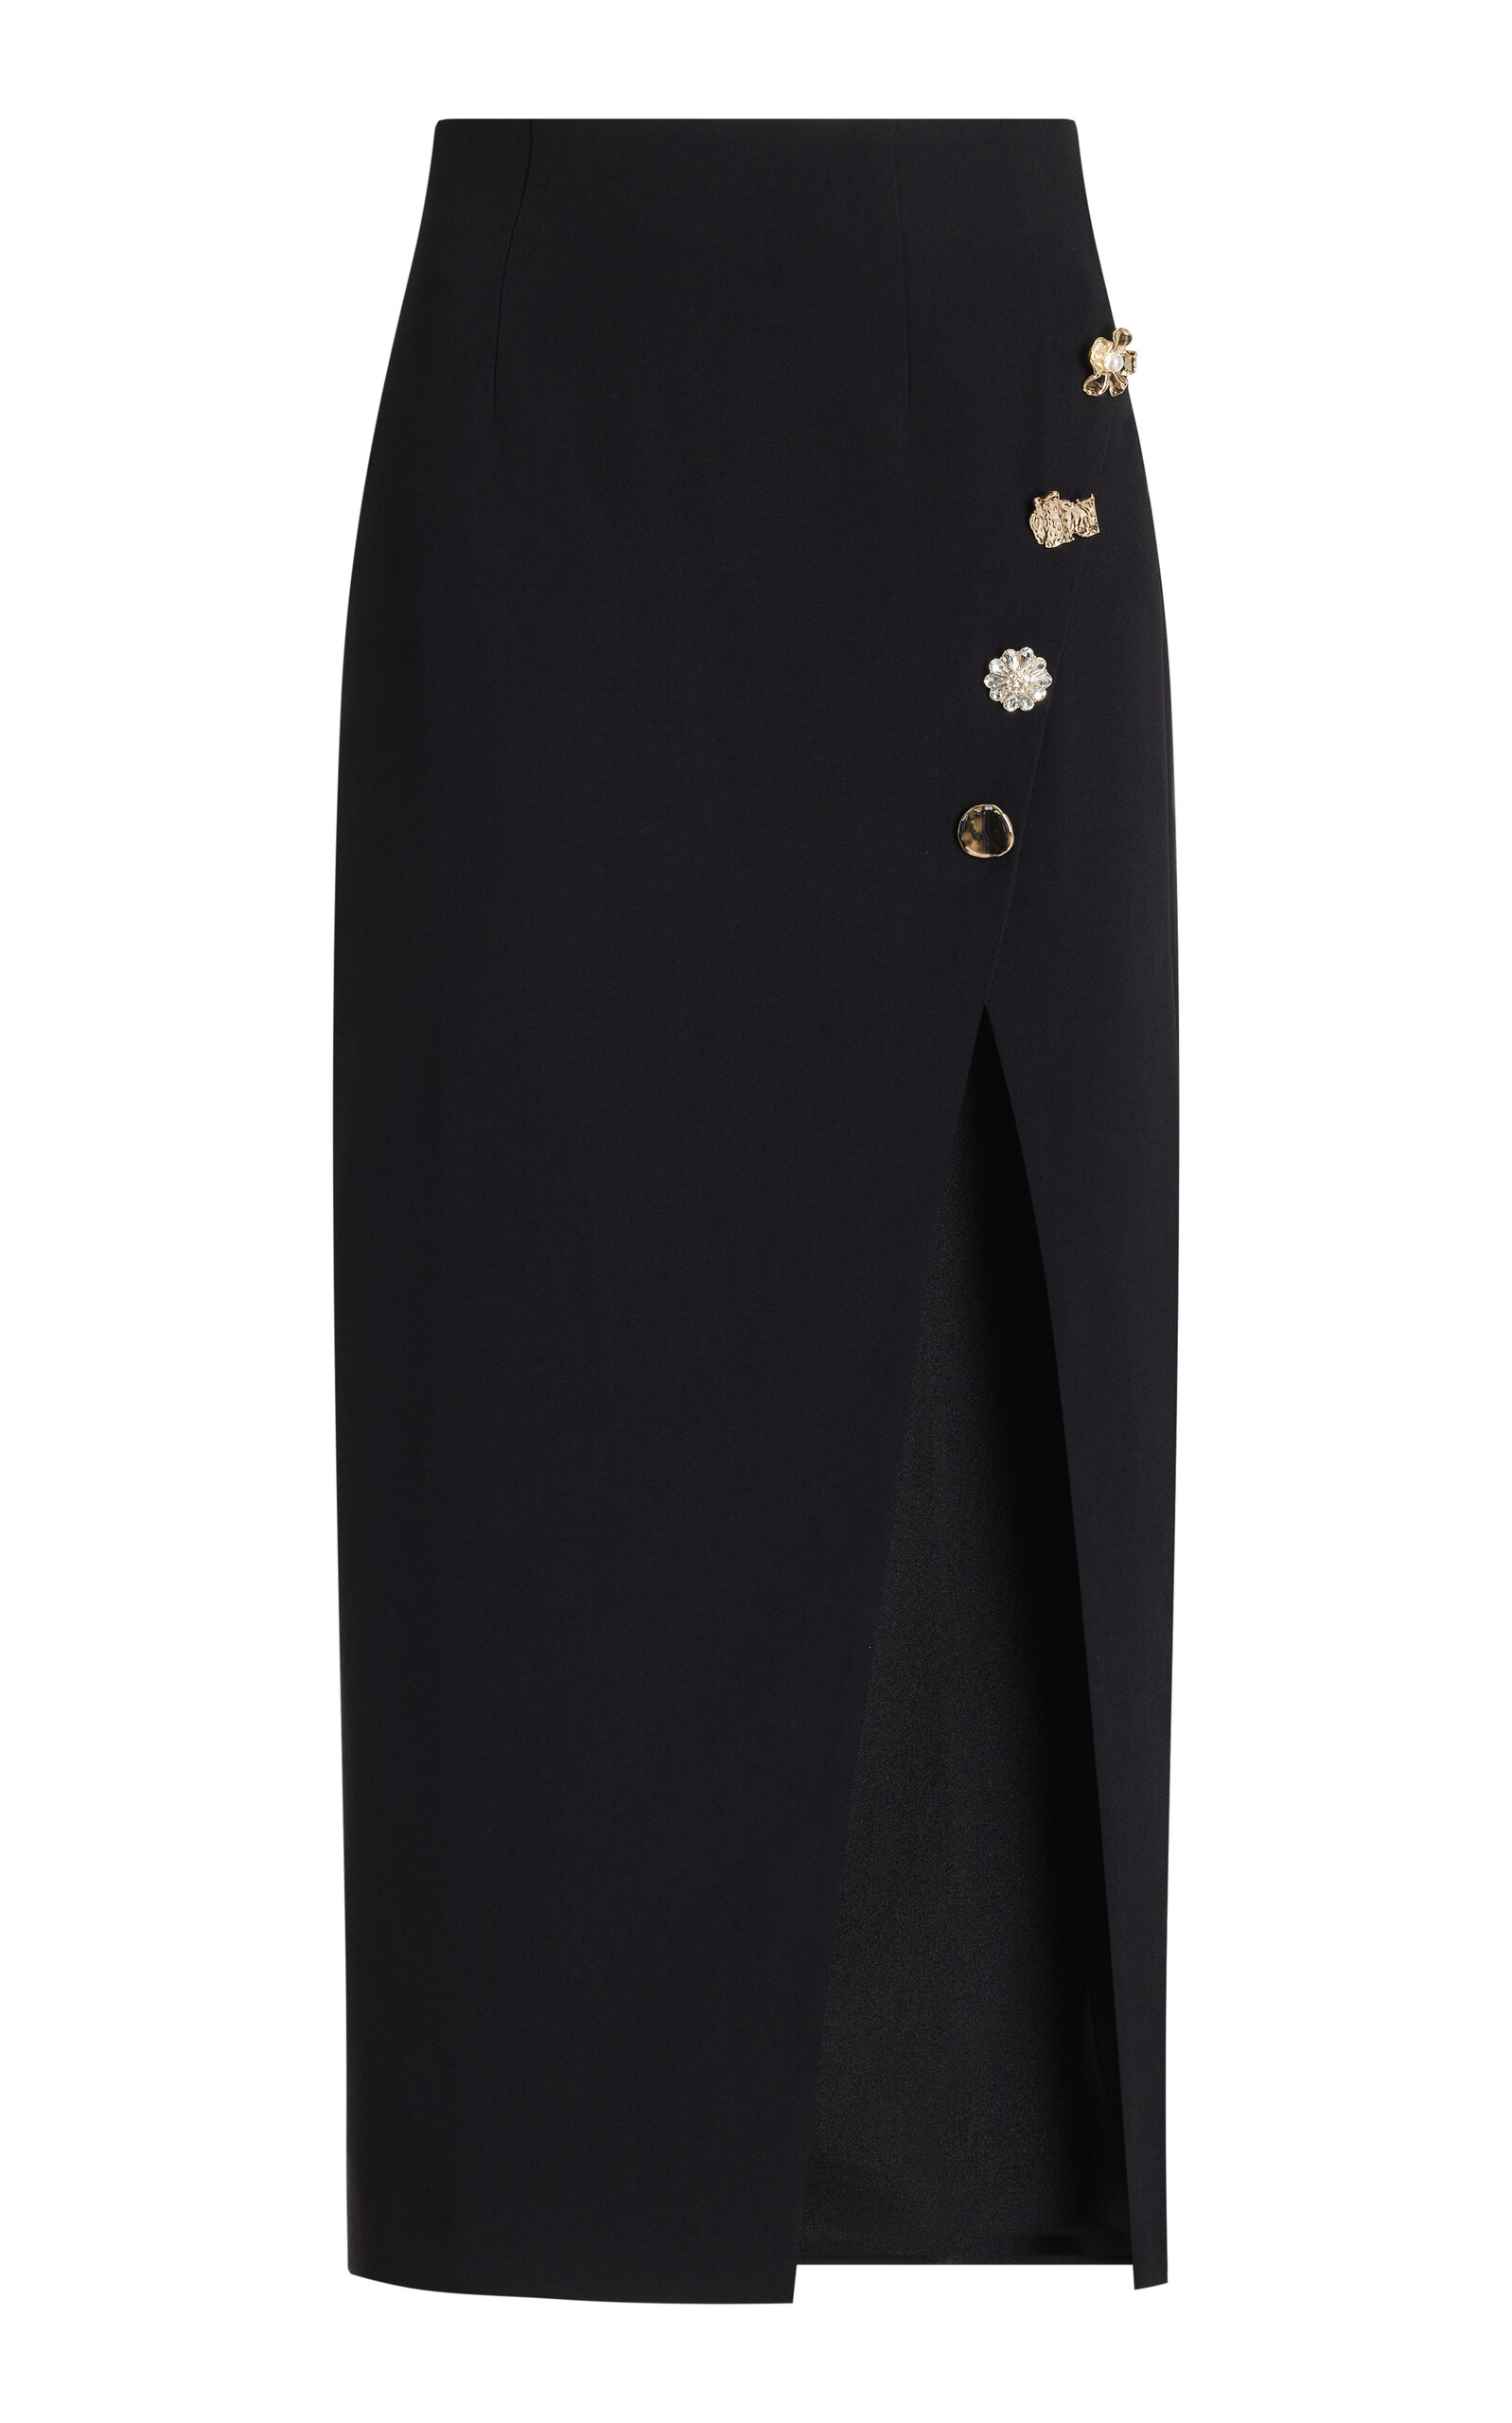 Self-portrait Black Crepe Midi Skirt